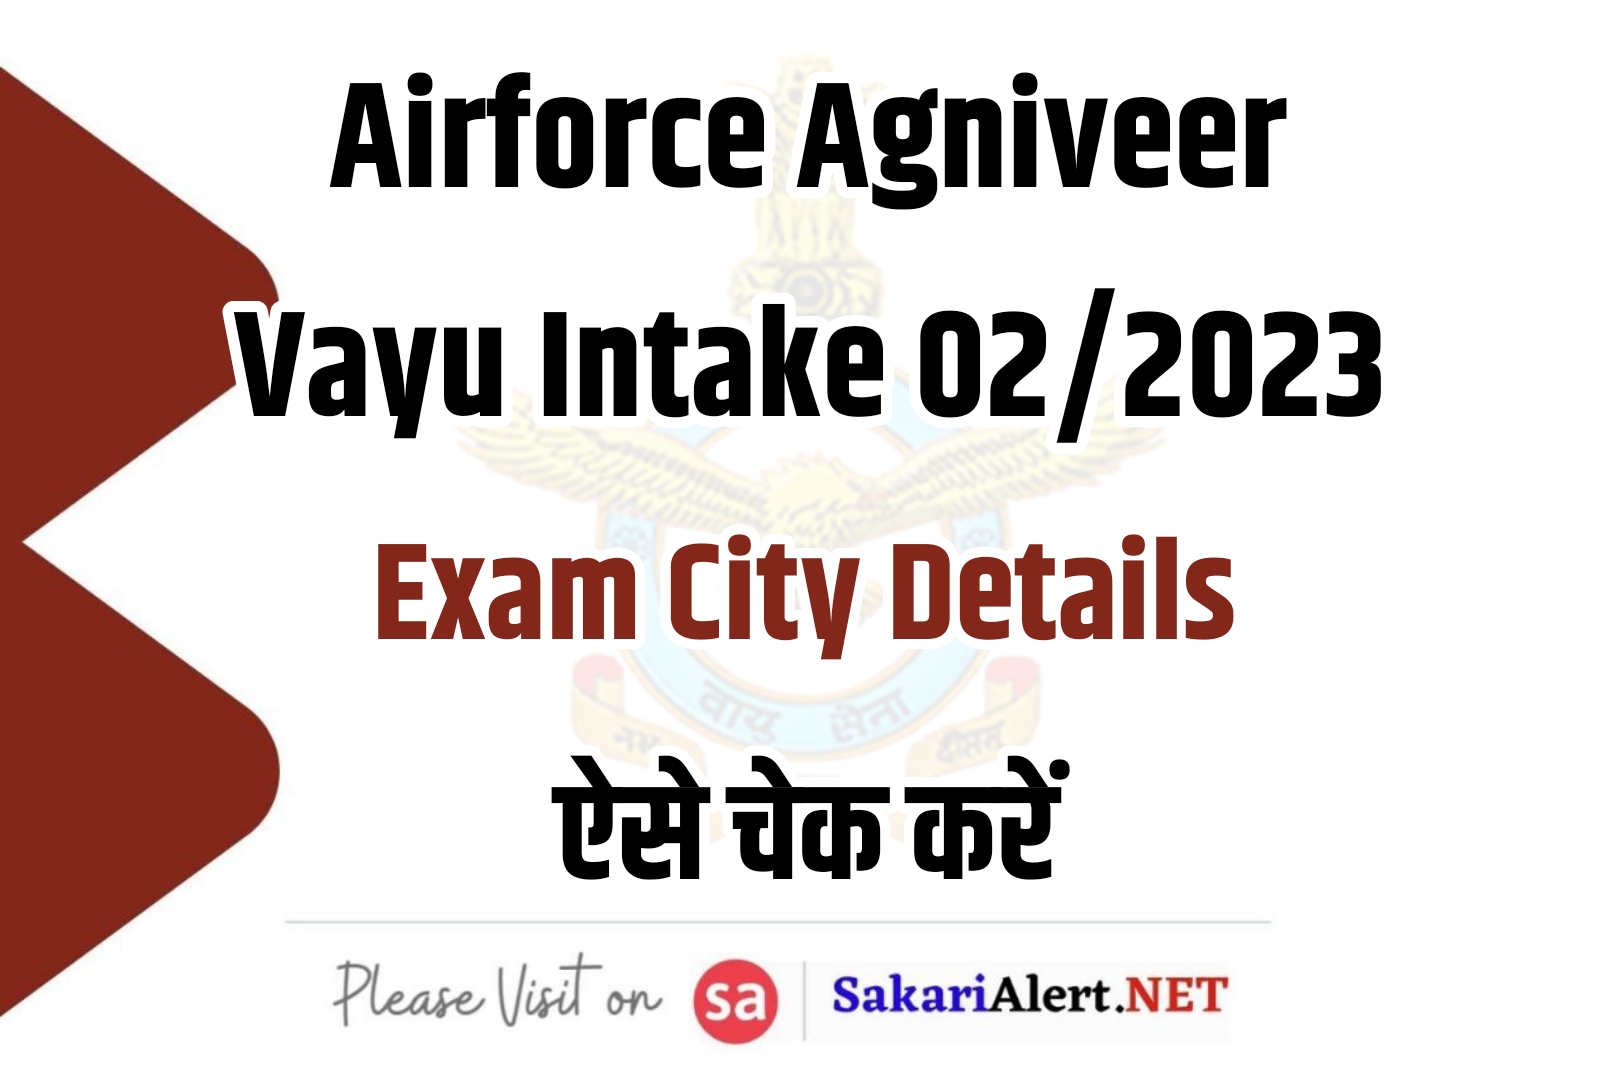 Airforce Agniveer Vayu Intake 02/2023 Exam City Details  | भारतीय वायु सेना अग्निवीर भर्ती परीक्षा तिथि एवं शहर विवरण